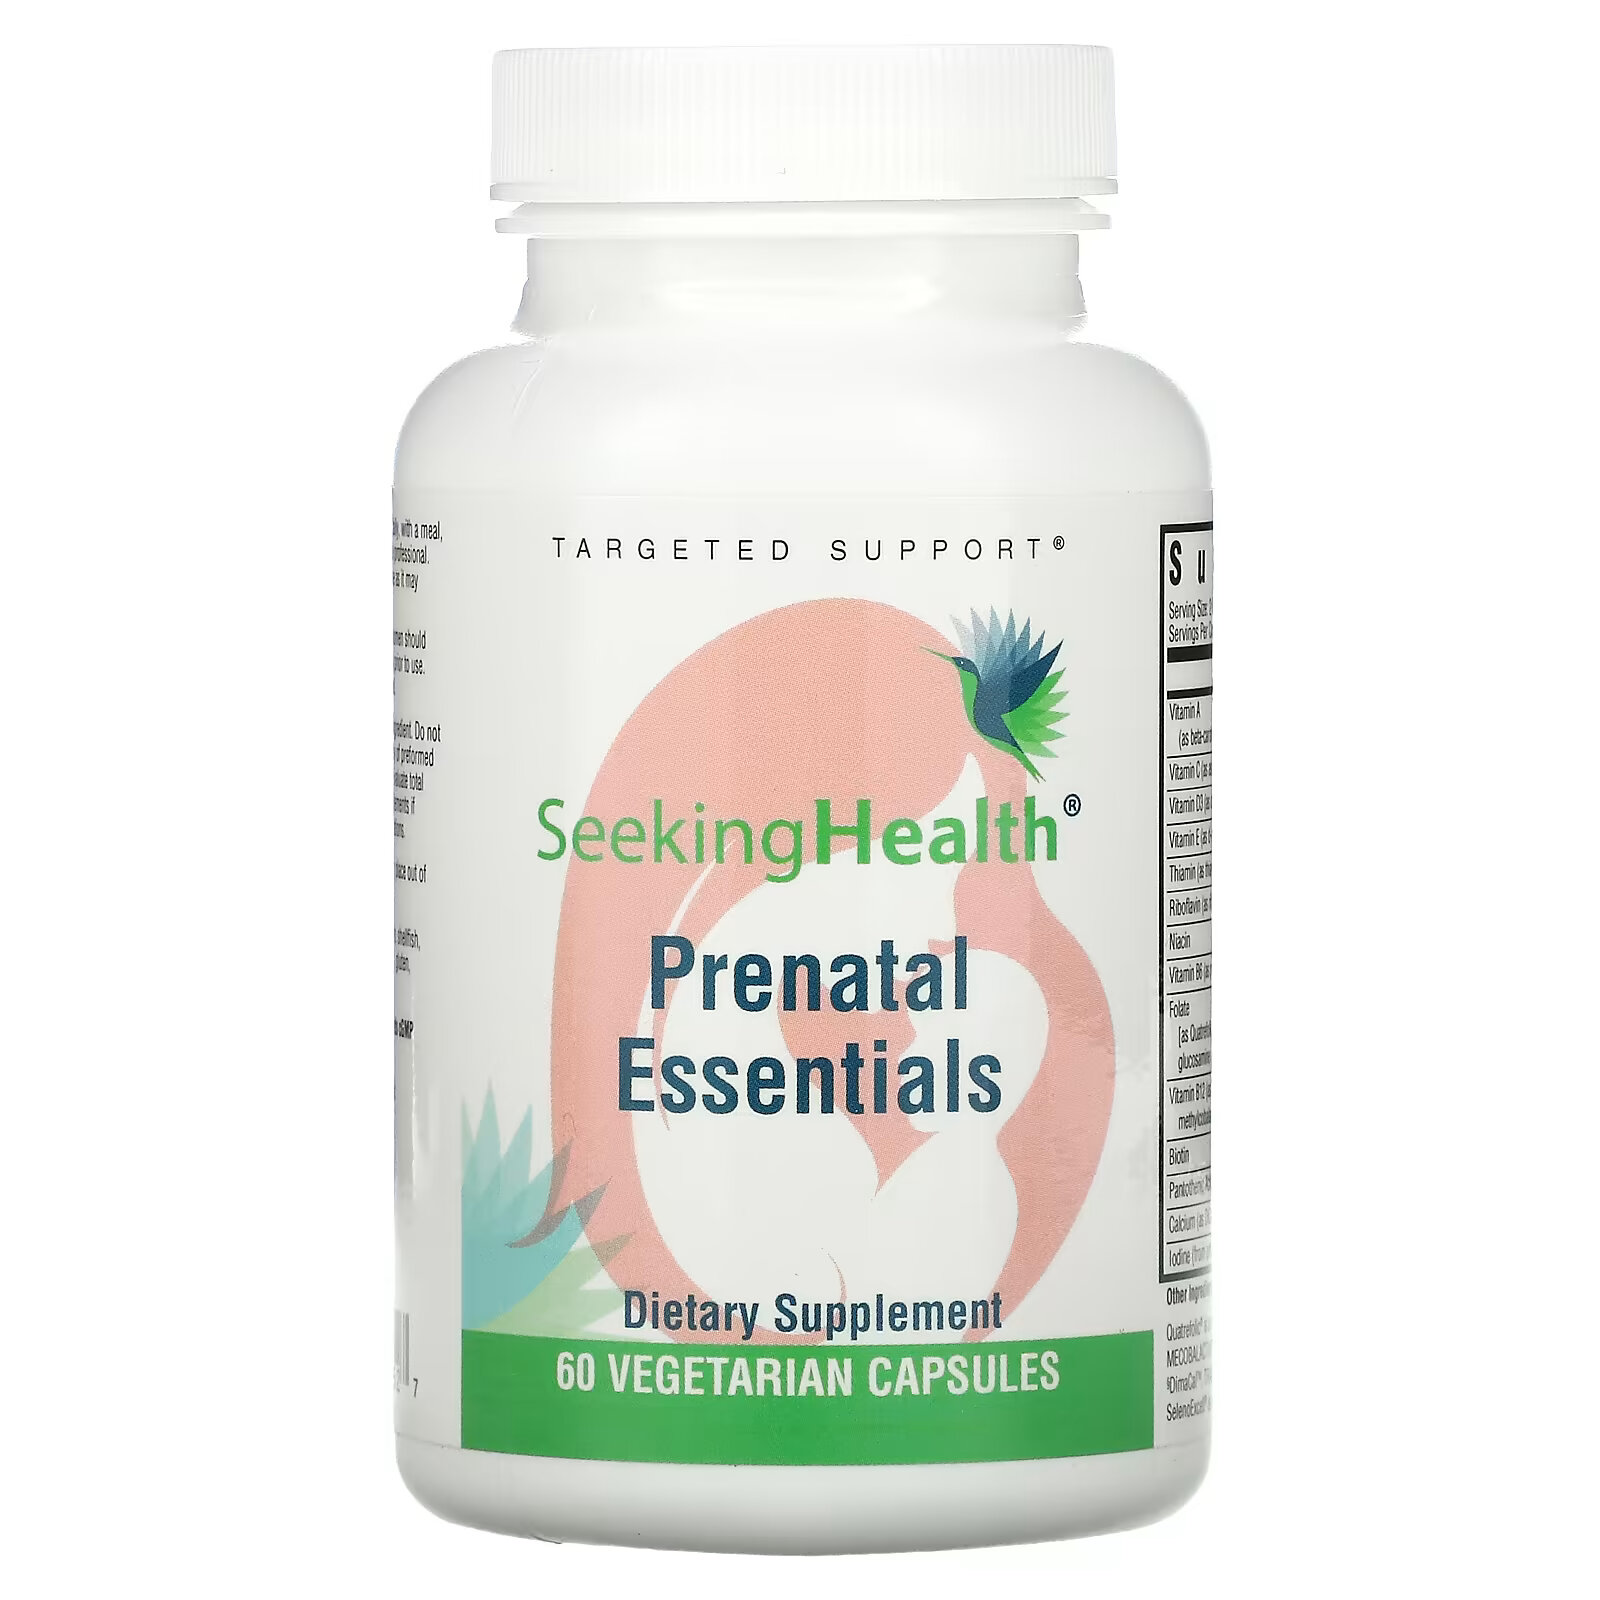 Seeking Health, Prenatal Essentials, 60 вегетарианских капсул